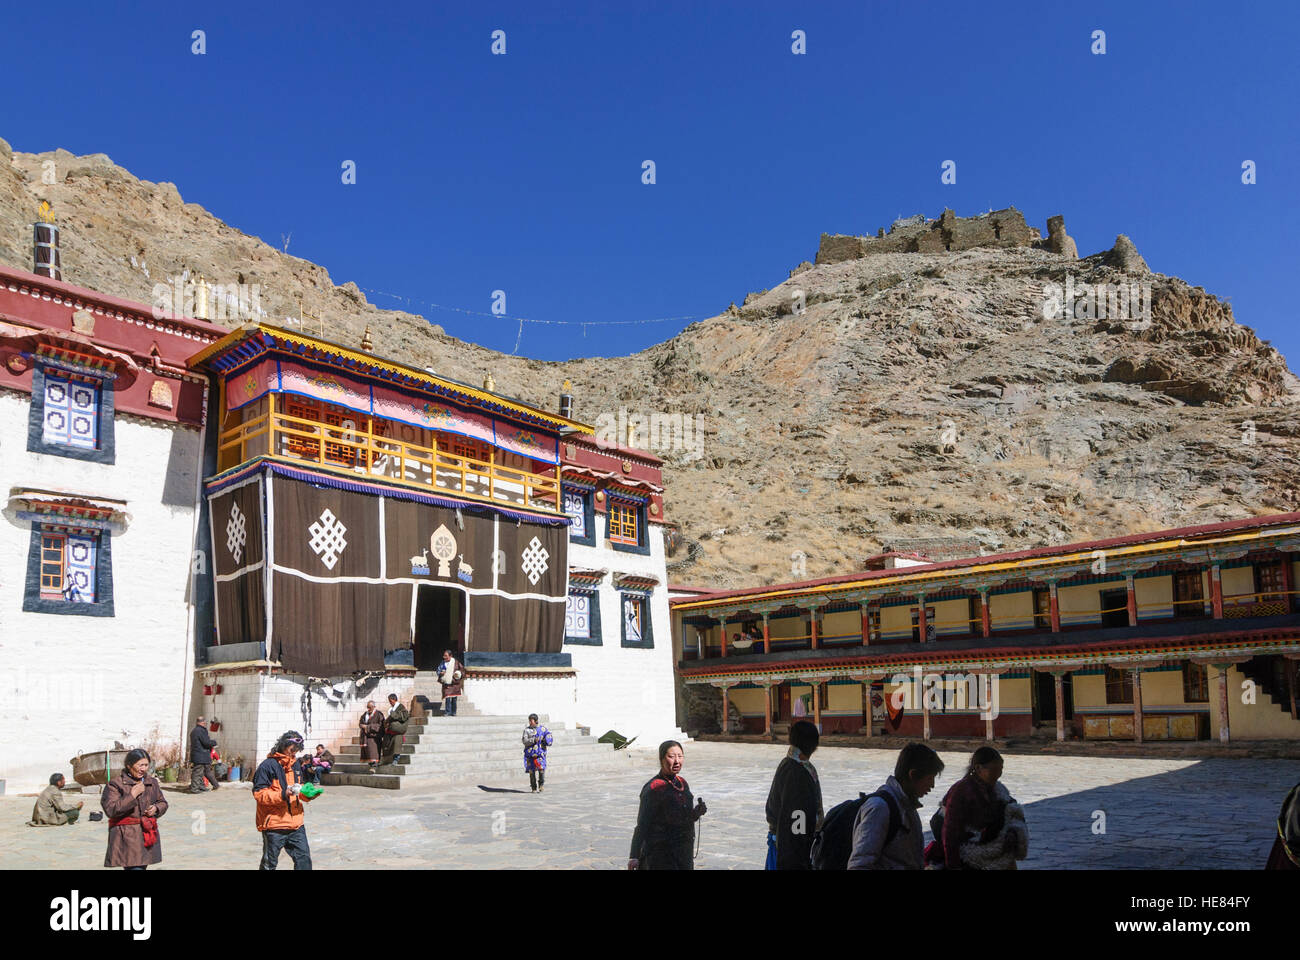 Dagtse : Sanga monastère sous le Dagtse Dzong (château), Tibet, Chine Banque D'Images